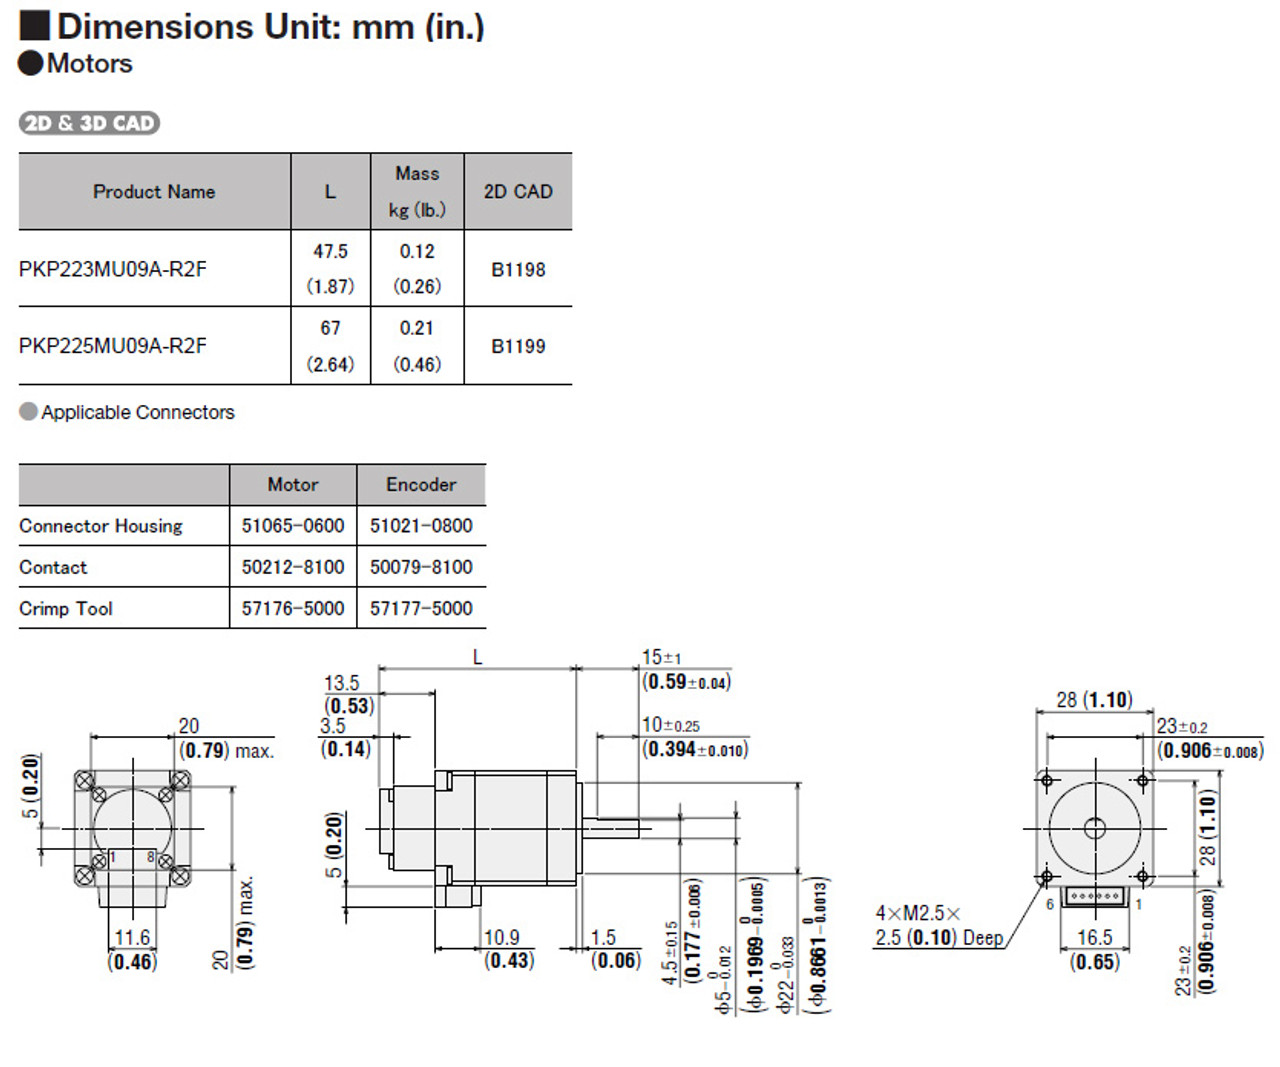 PKP225MU09A-R2F - Dimensions